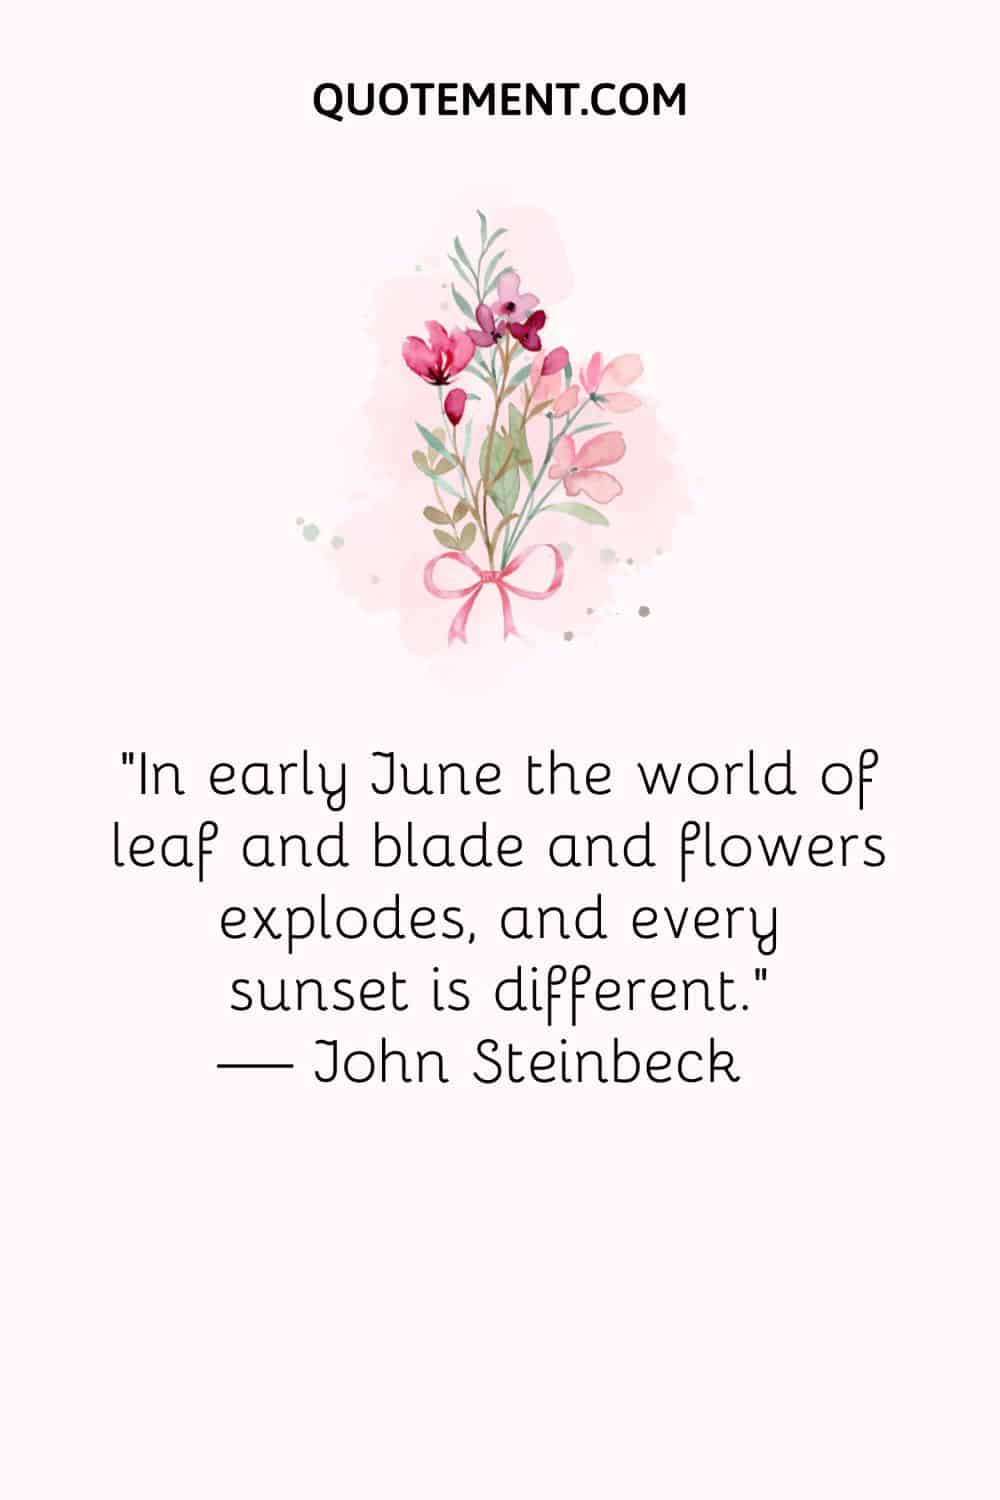 imagen de flores rosas que representa la mejor cita de junio